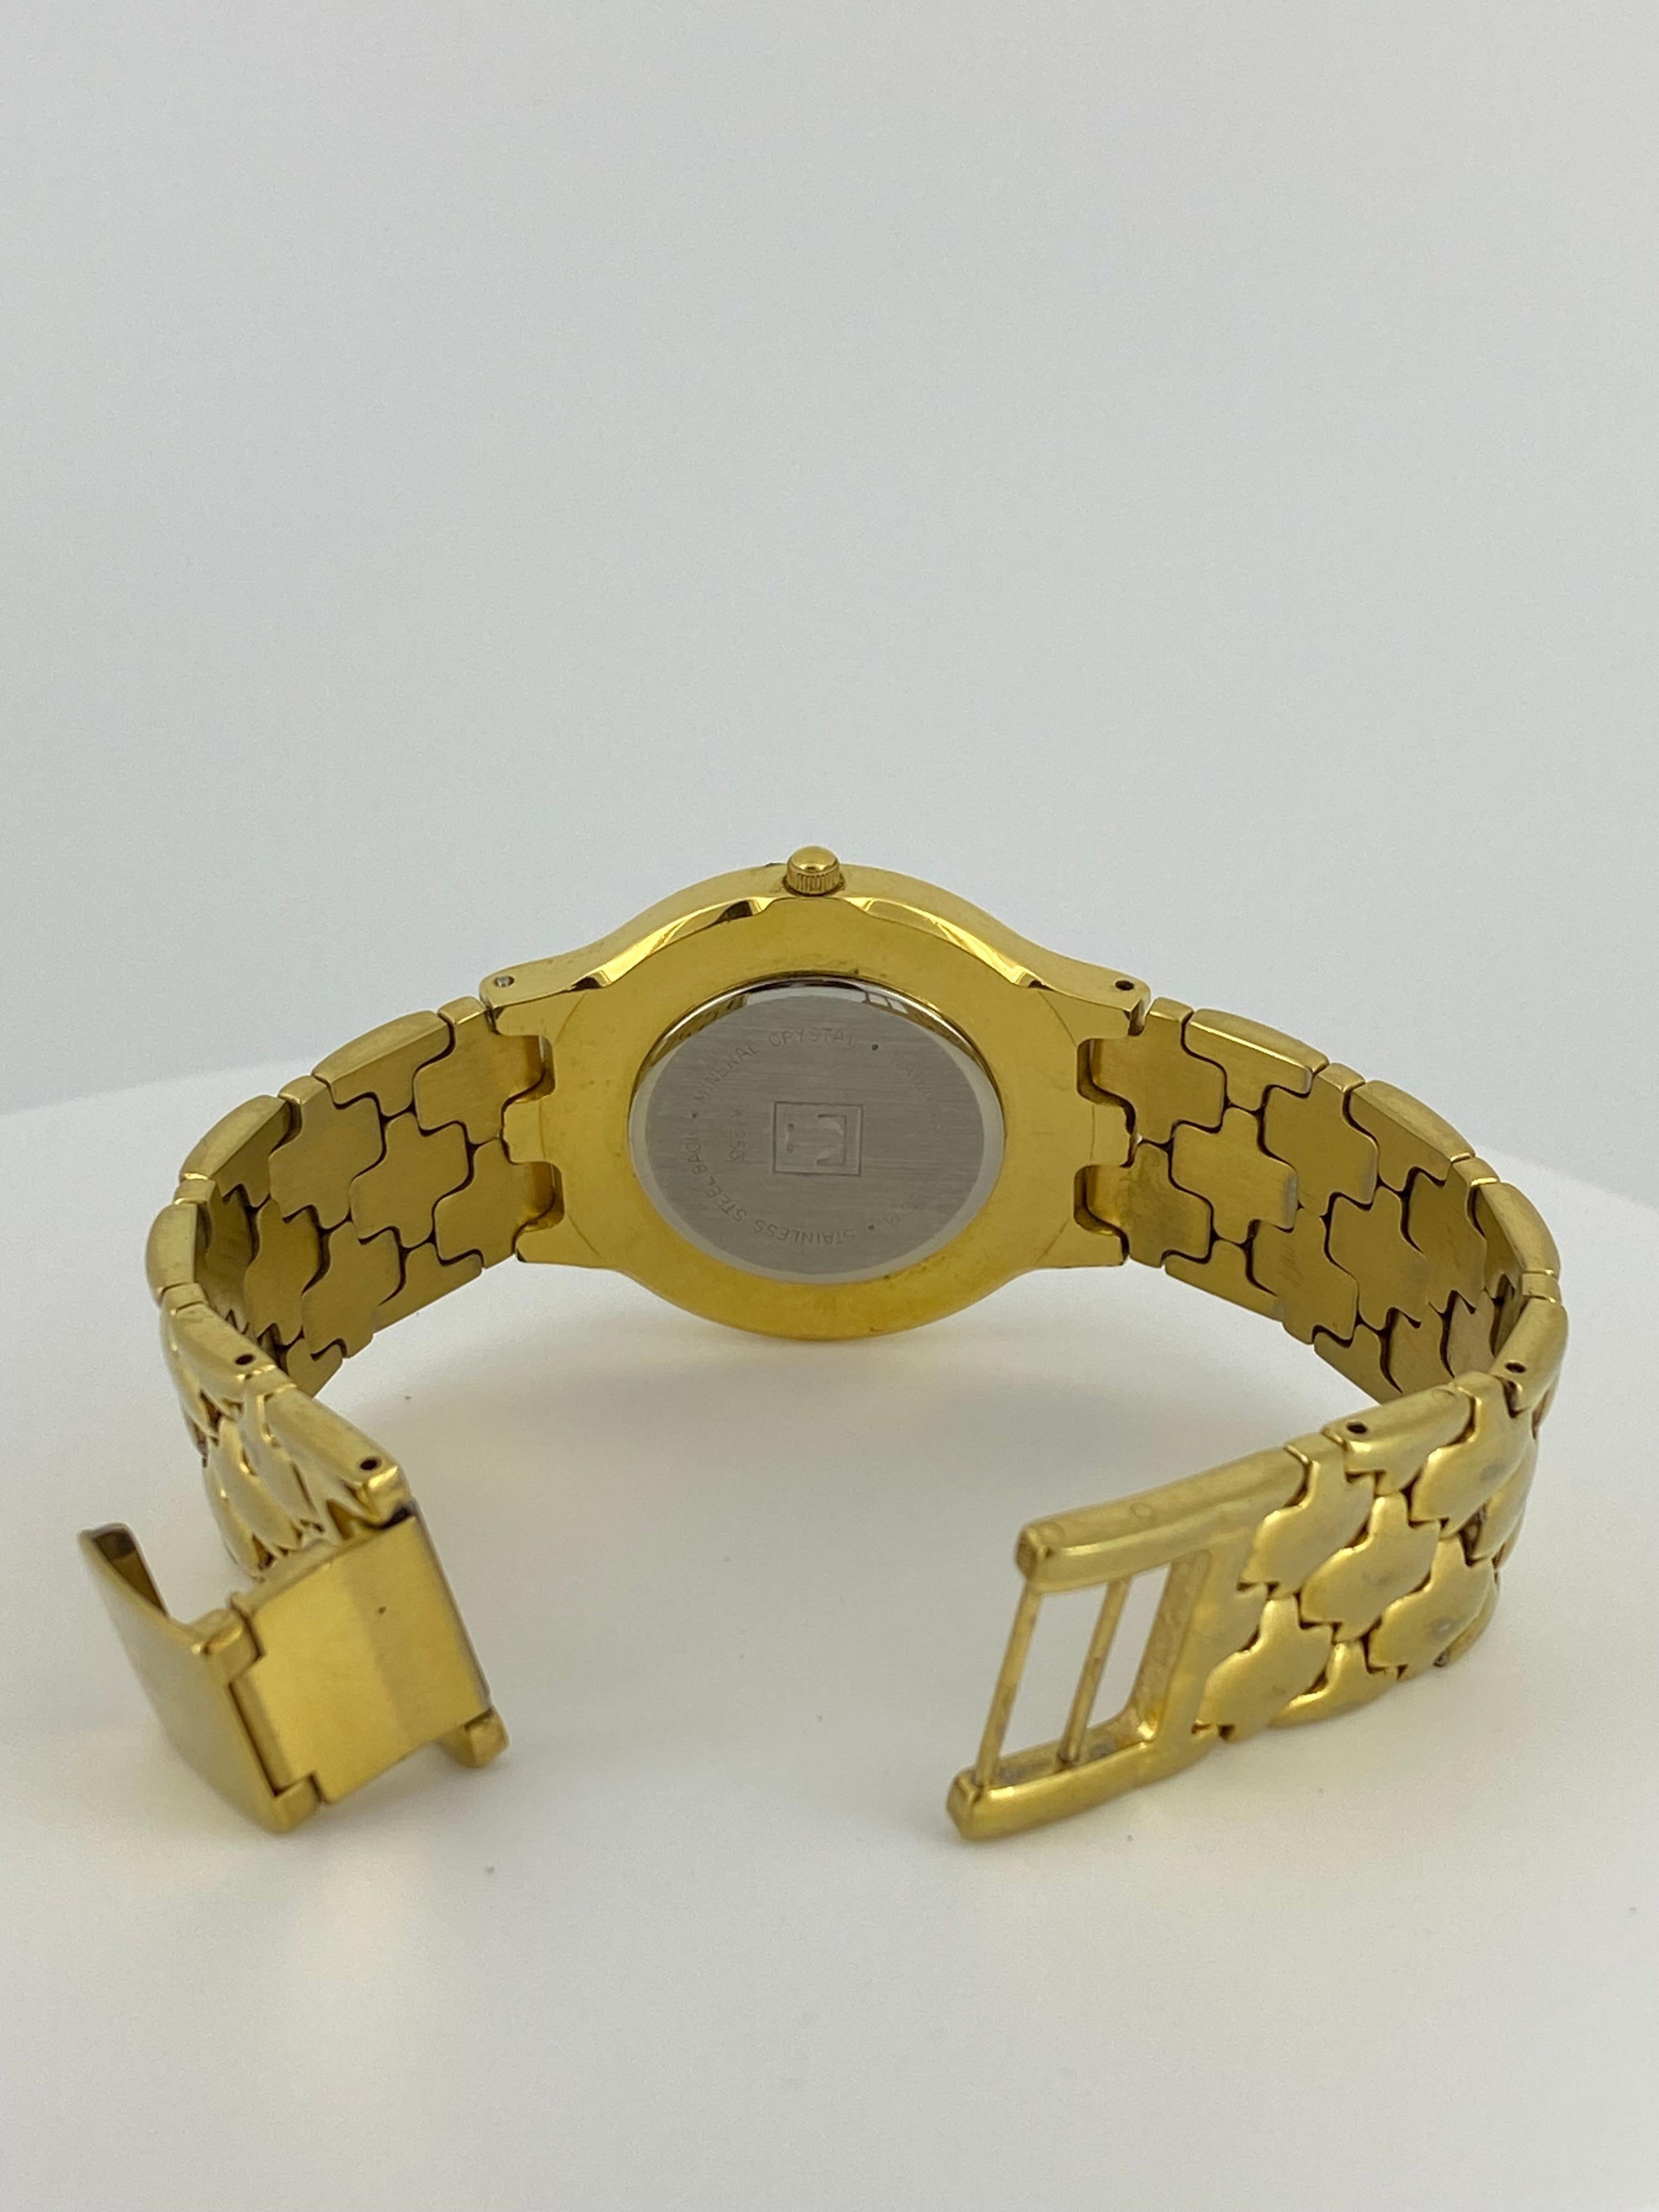 Ce garde-temps de TISSOT 
La ref K 253 est une montre vintage sophistiquée pour homme, 
datant des années 1990

Réalisé en acier inoxydable plaqué or, 
Le boîtier mesure 32 mm (sans la couronne), 
signé et numéroté au dos, 
résistant à l'eau 30m